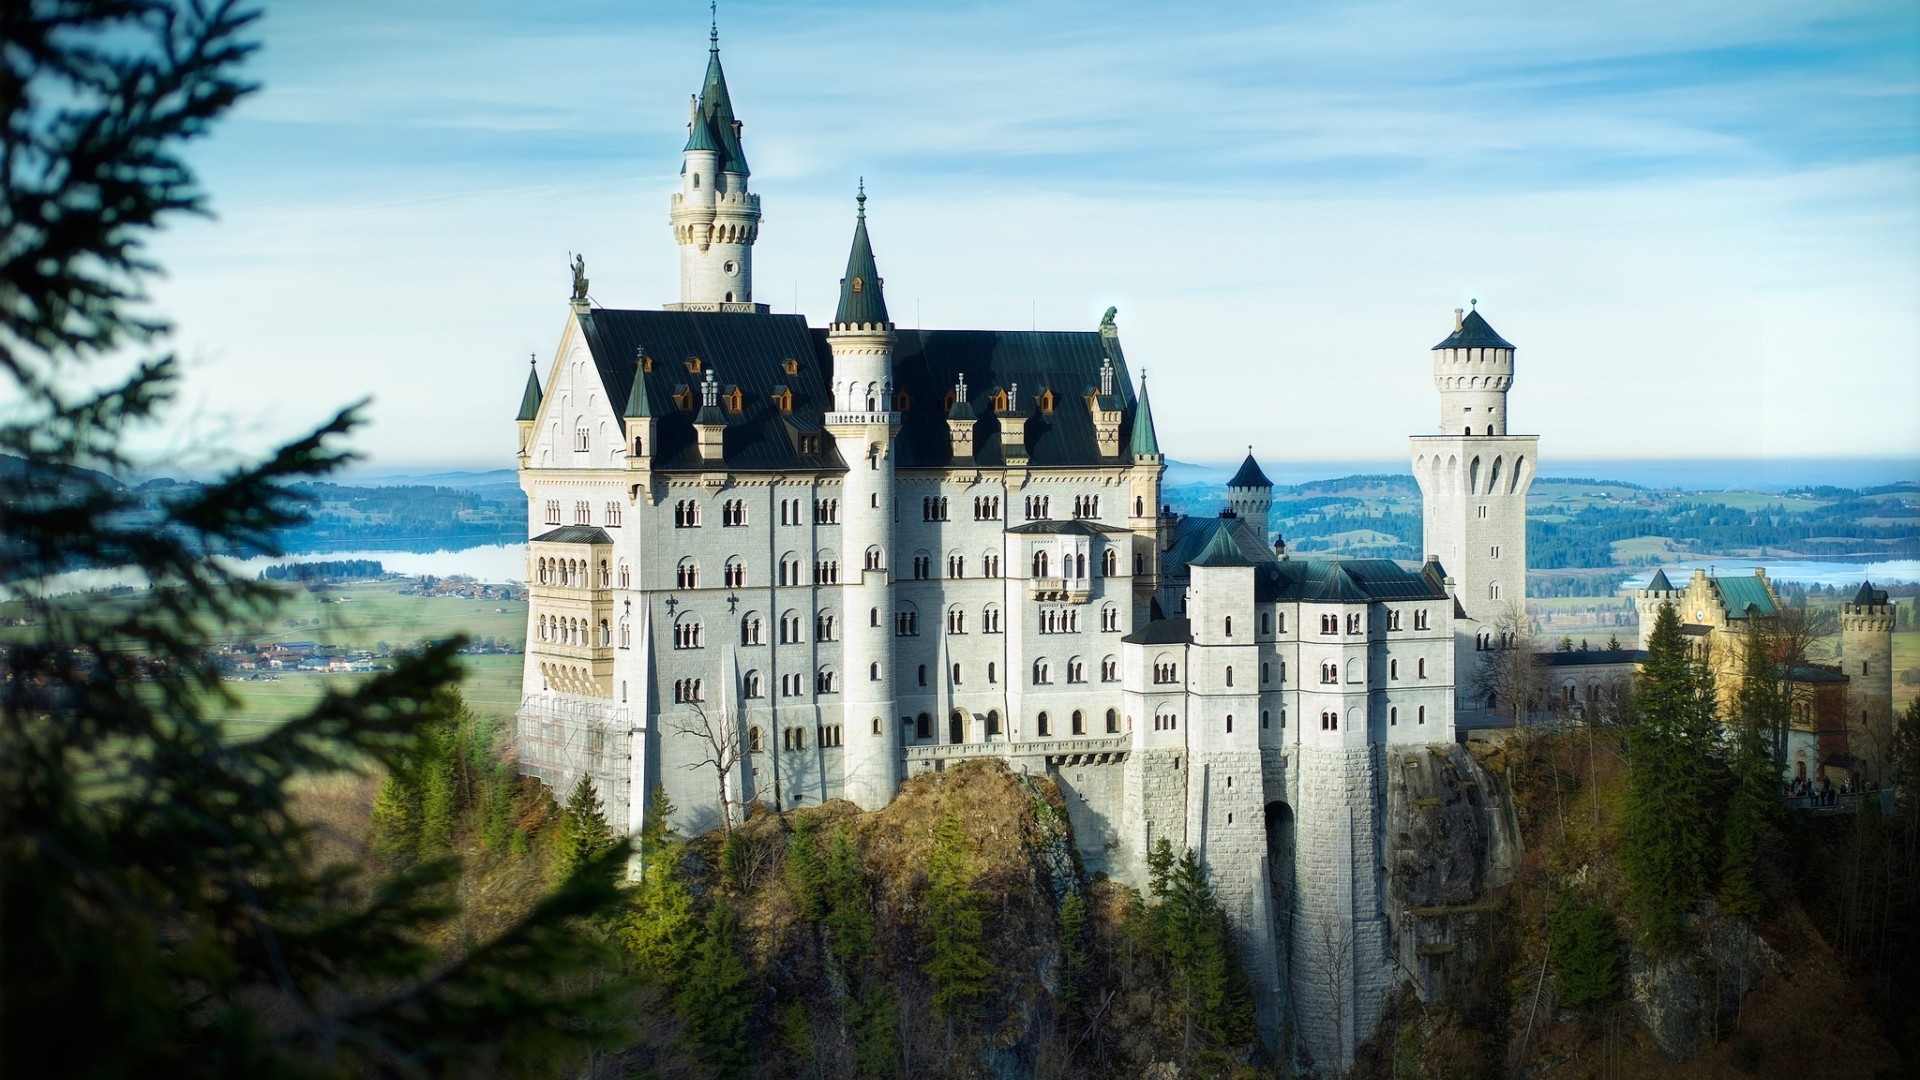 Bavaria Neuschwanstein Castle for 1920 x 1080 HDTV 1080p resolution